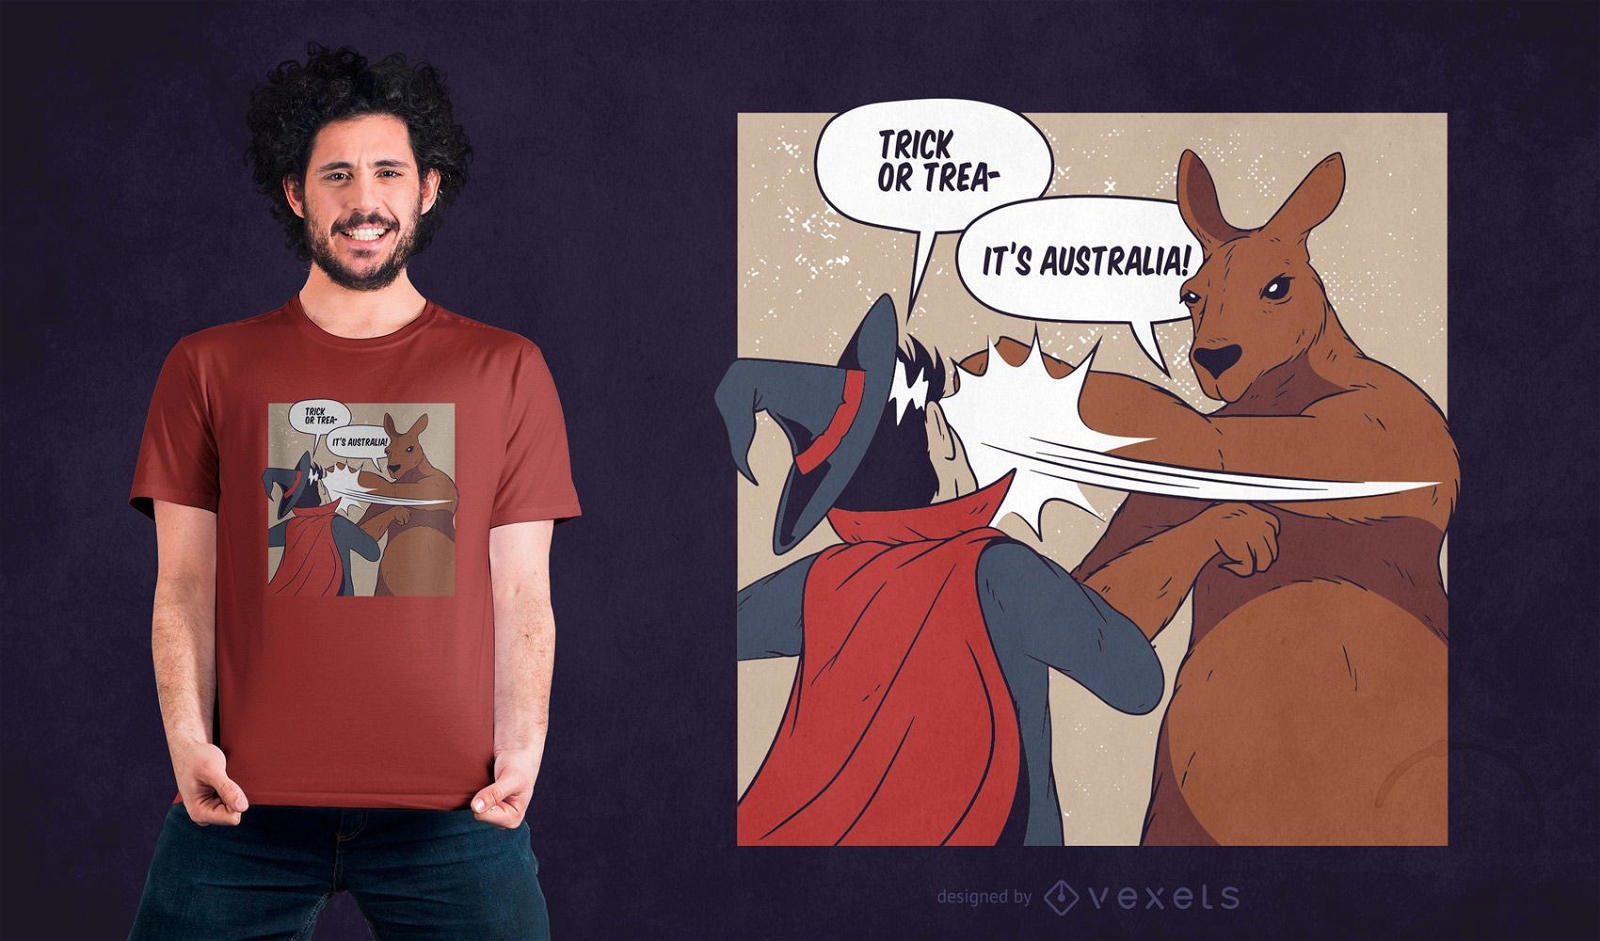 Design engra?ado de camisetas australianas para o Dia das Bruxas